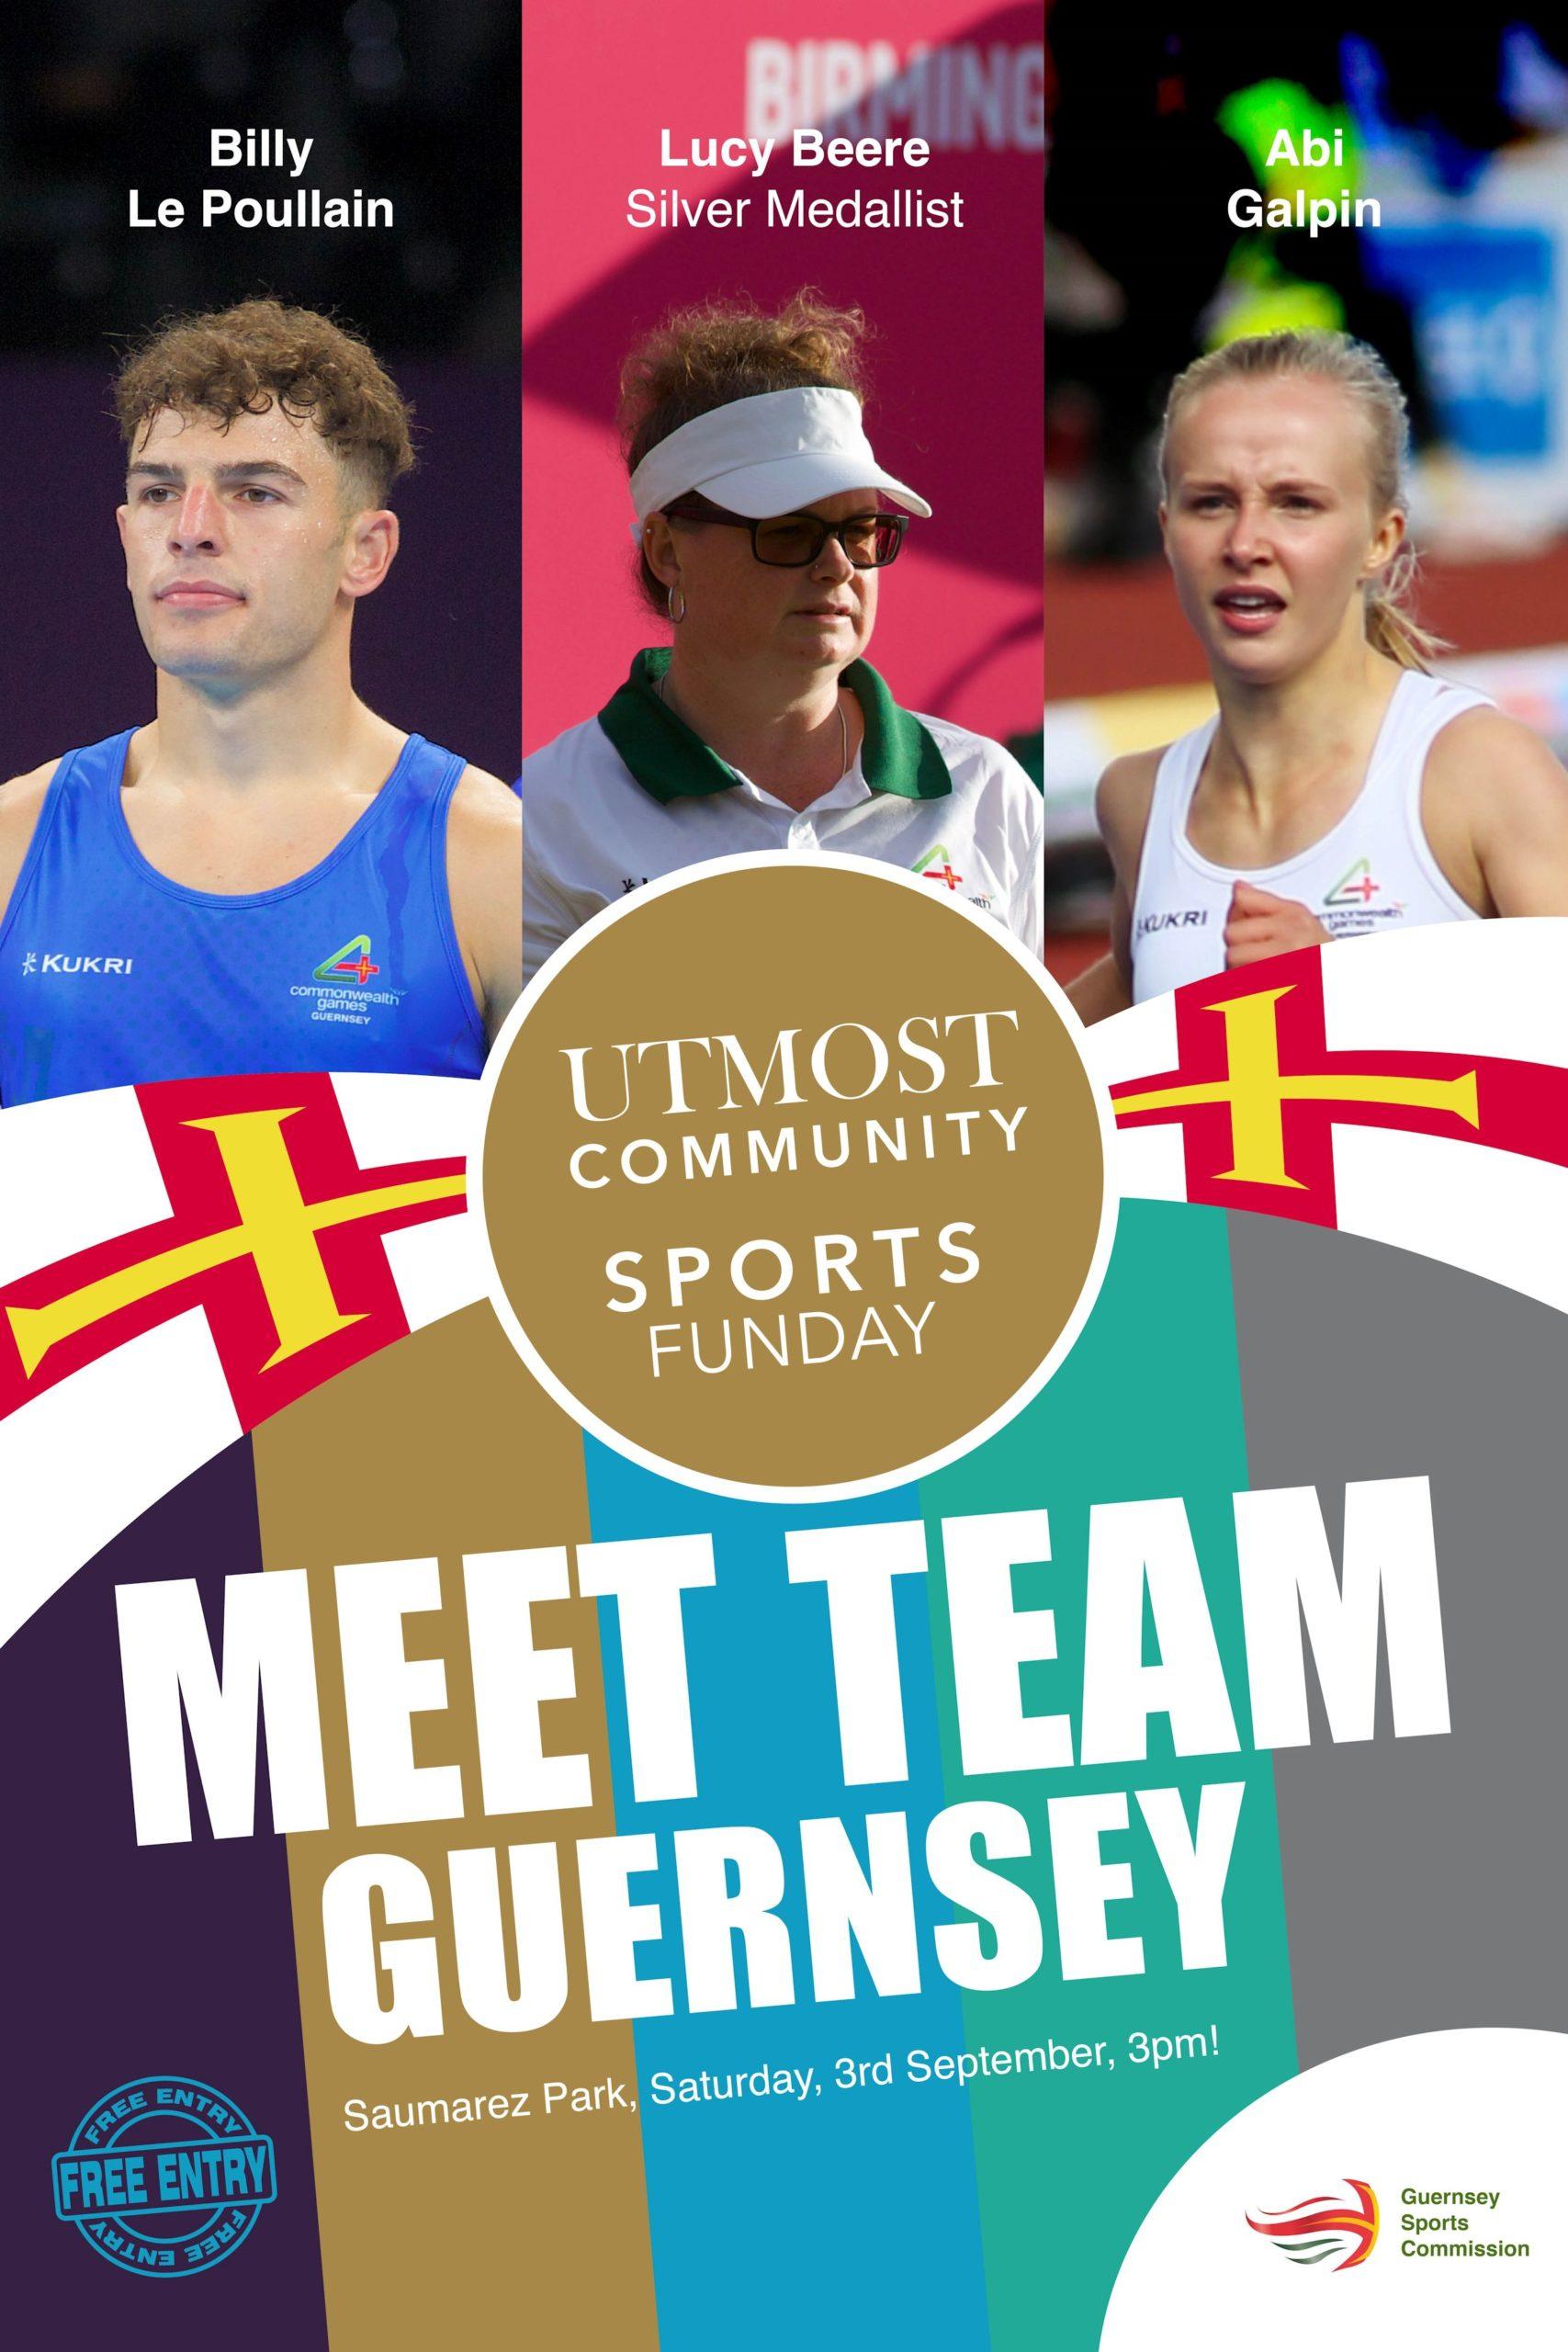 Meet Team Guernsey